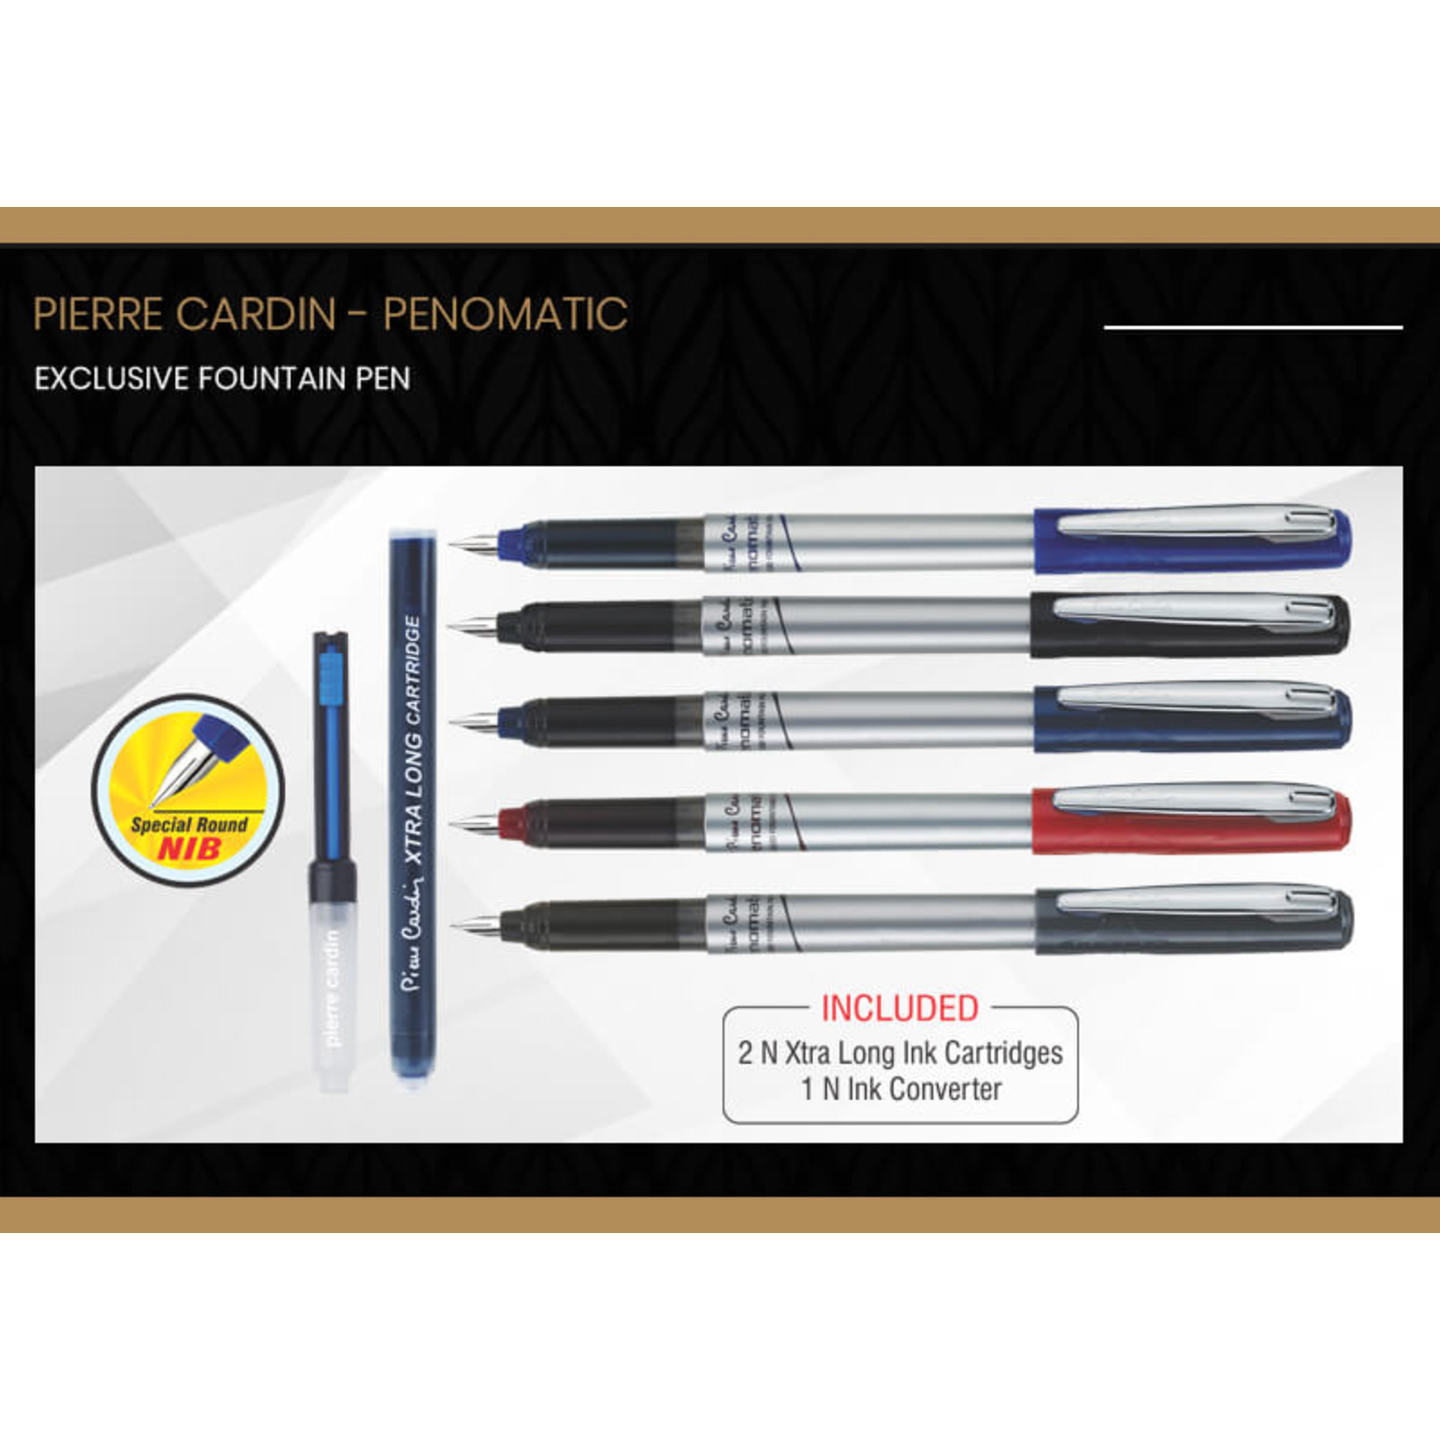 Pierre Cardin Penomatic Fountain Pen